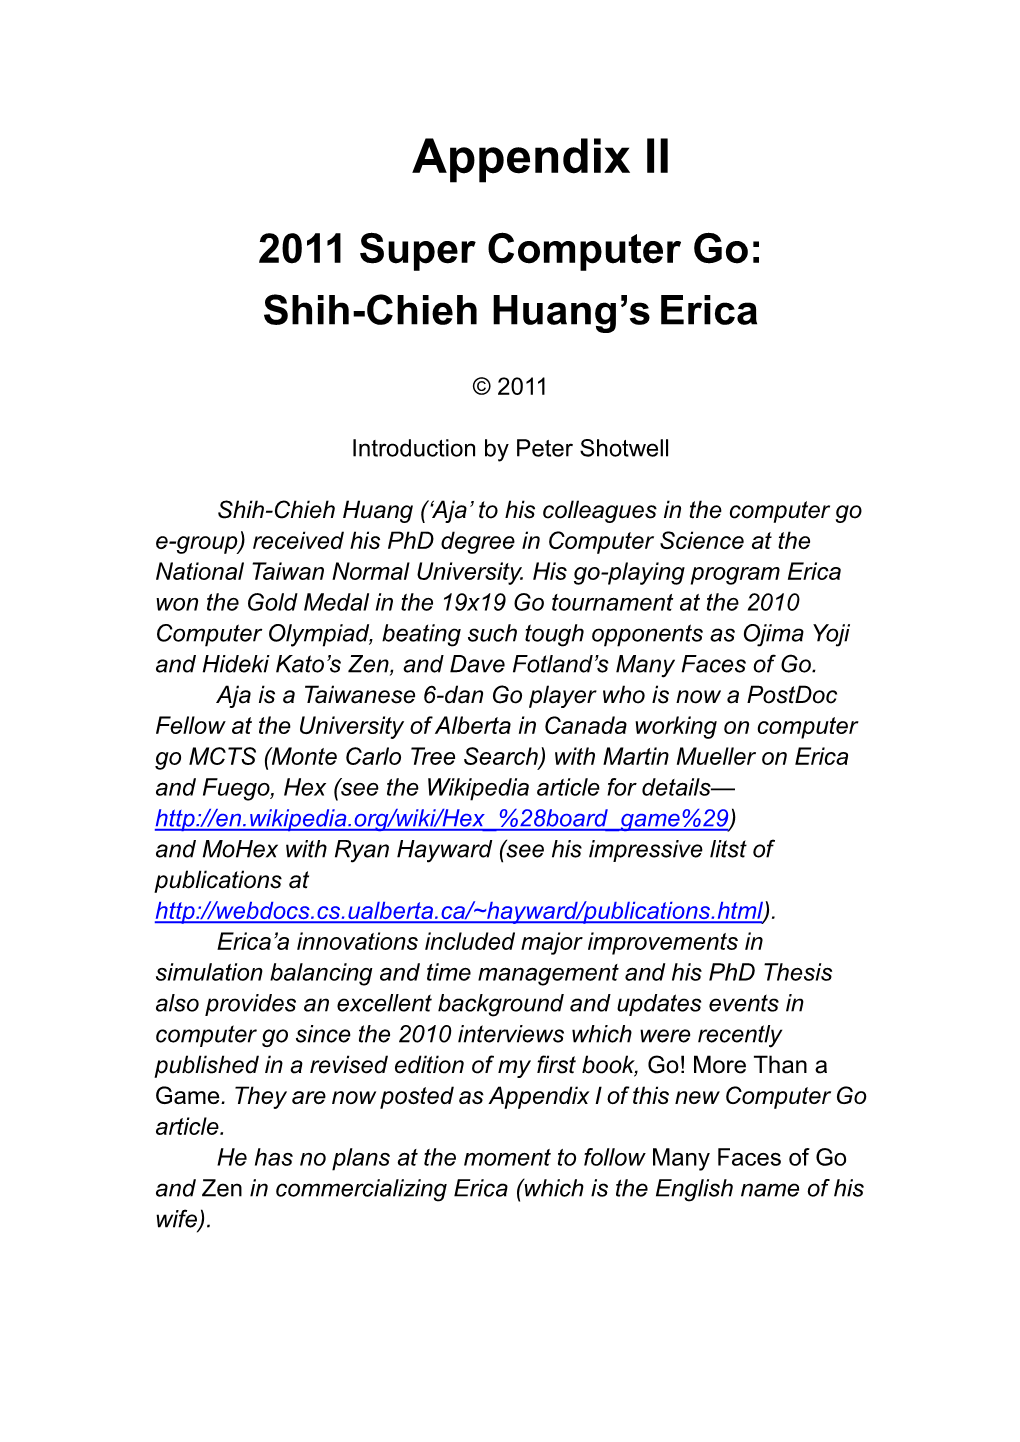 Appendix II: 2011 Super Computer Go: Shih